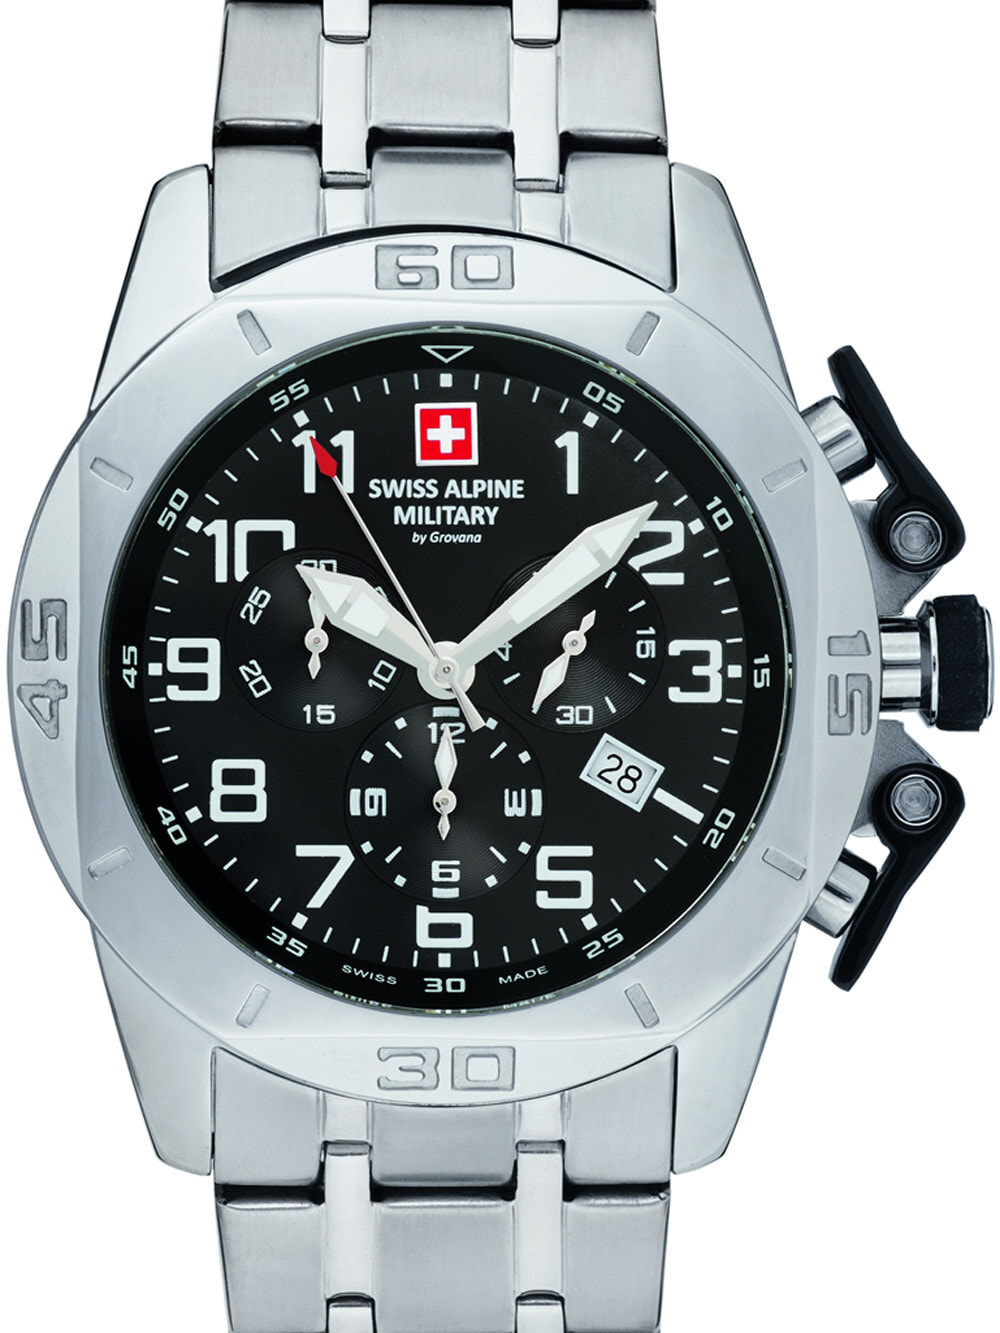 Мужские наручные часы с серебряным браслетом Swiss Alpine Military 7063.9137 chrono 45mm 10ATM